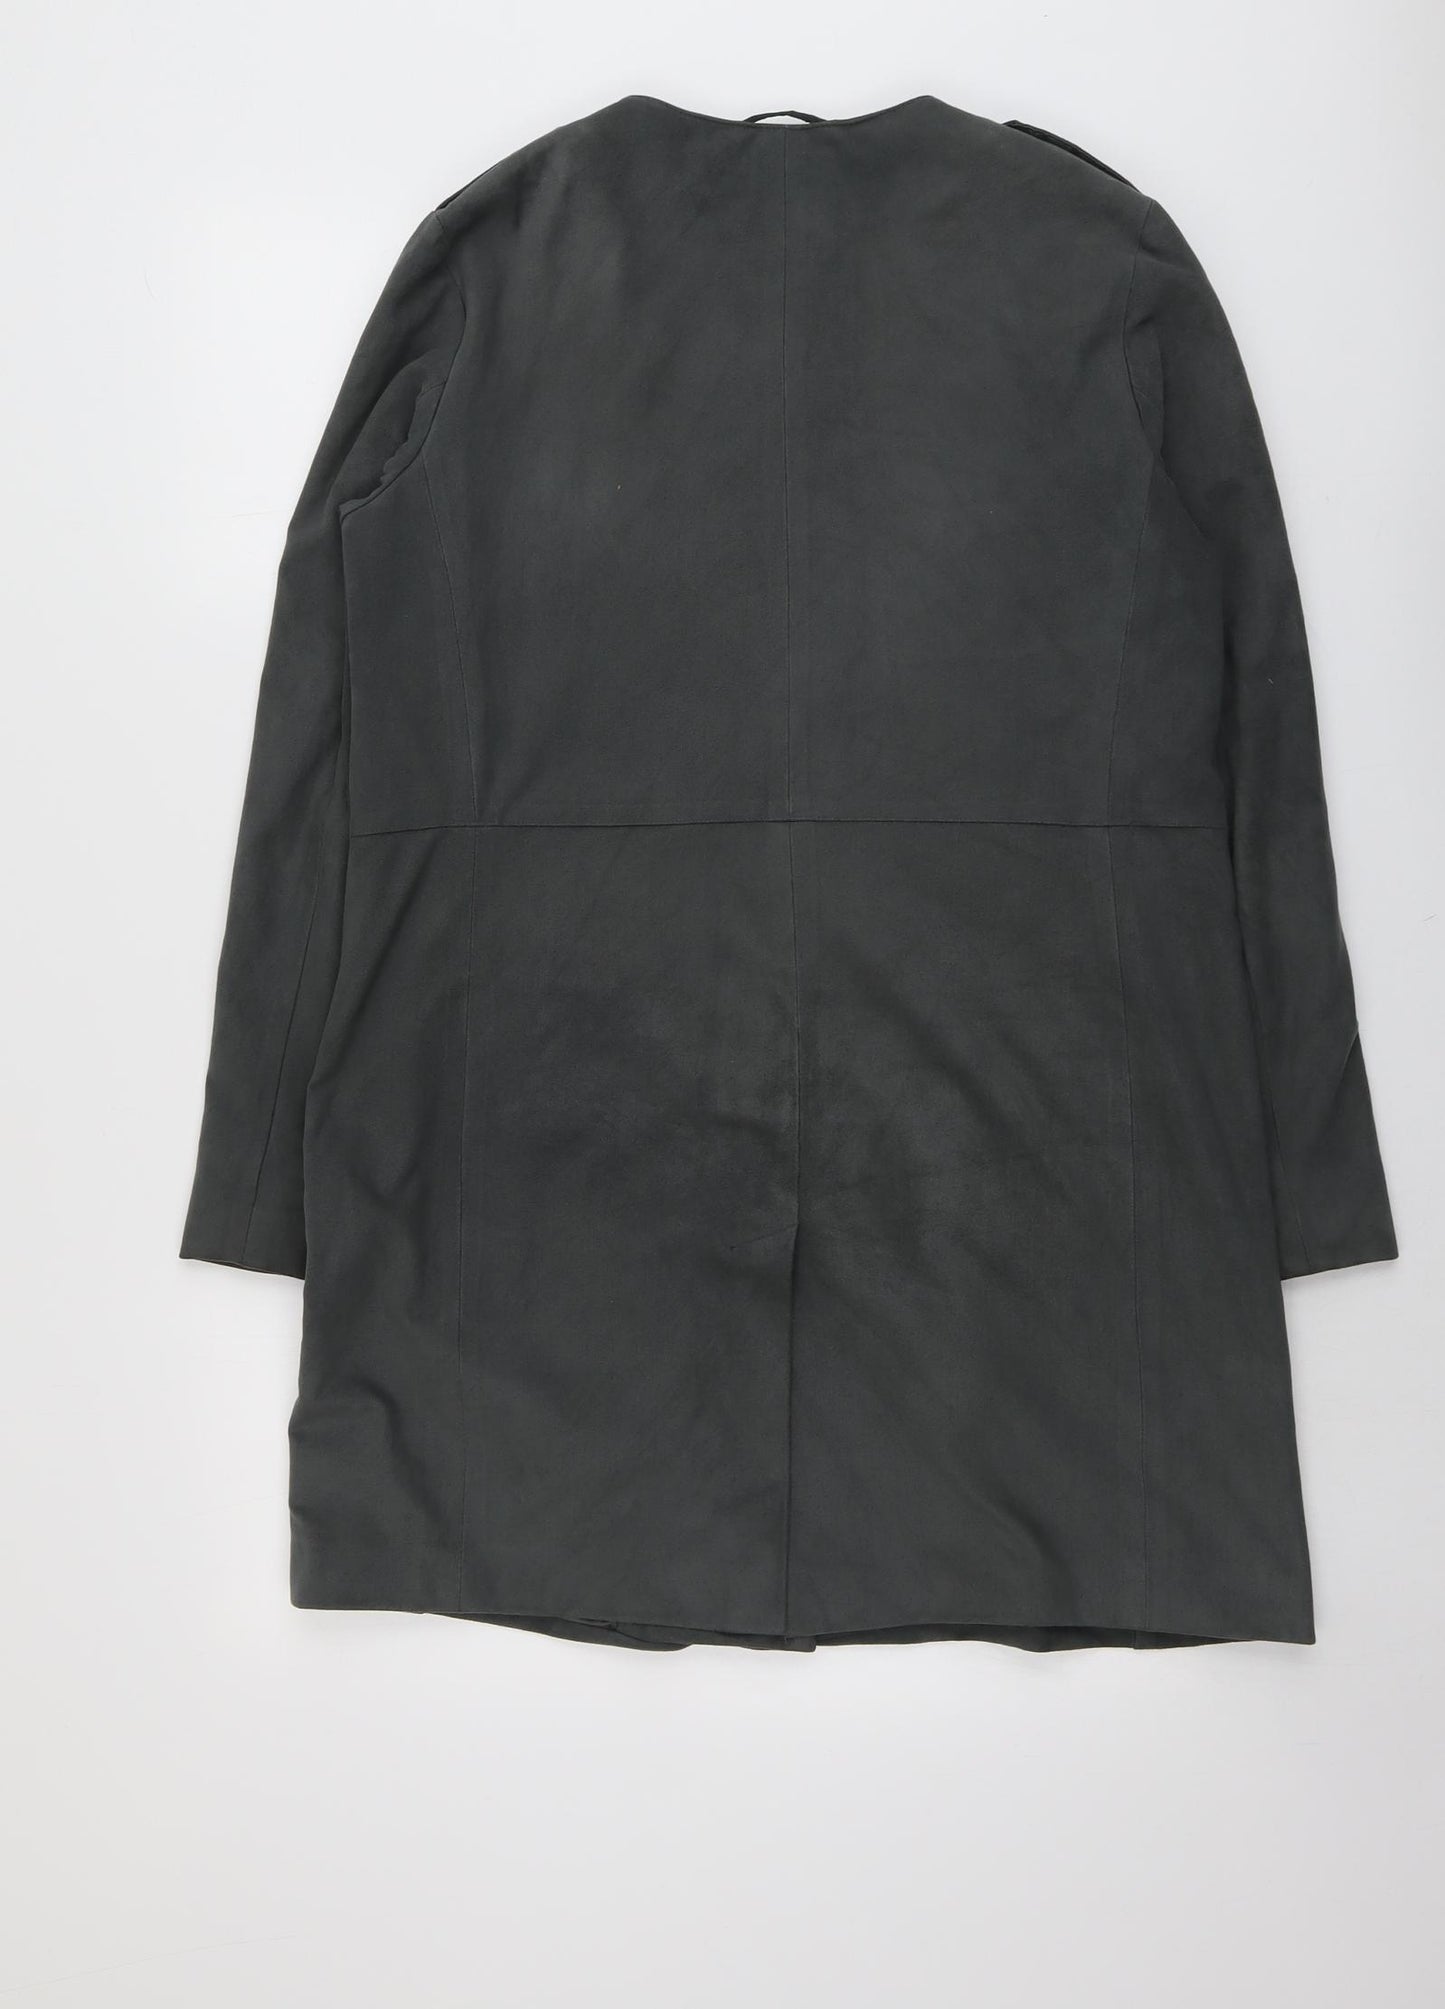 Per Una Womens Green Overcoat Coat Size 12 Snap